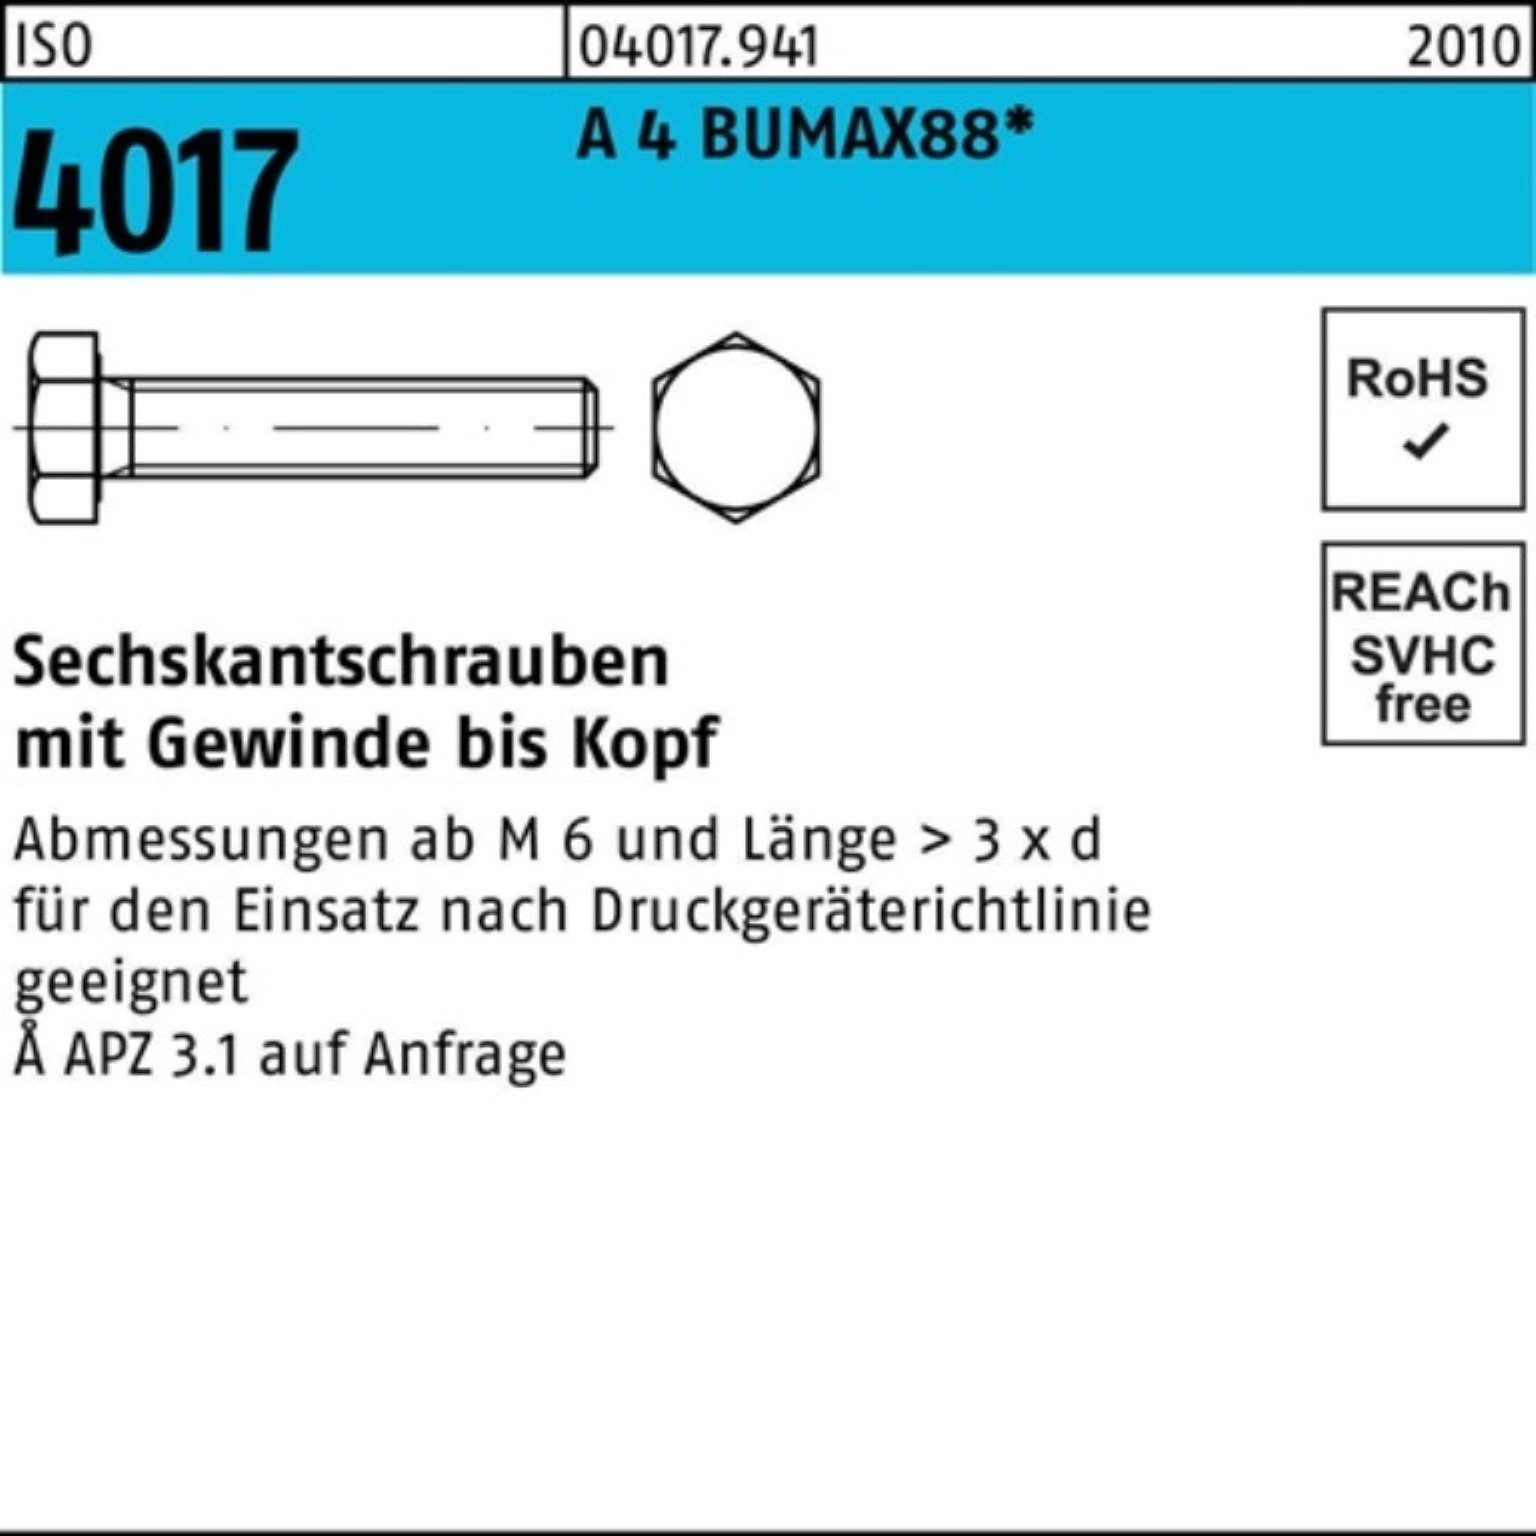 Bufab Sechskantschraube 100er Pack Sechskantschraube ISO 4017 VG M8x 60 A 4 BUMAX88 50 Stück